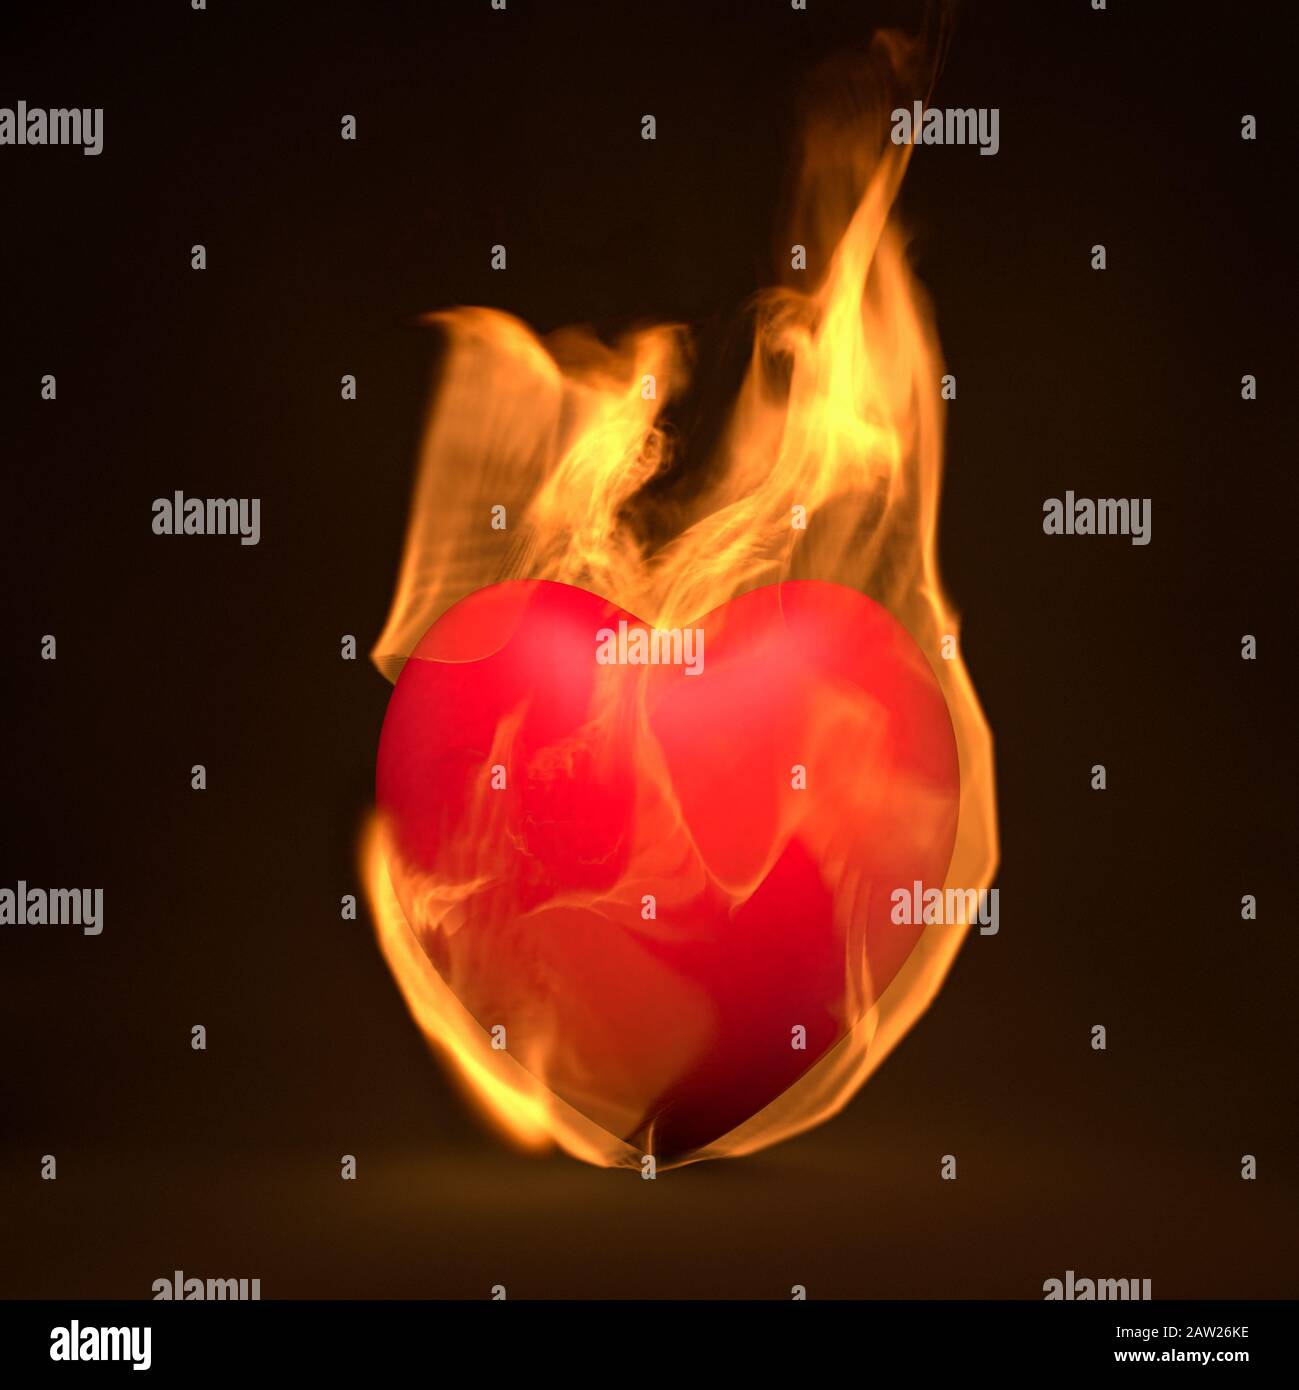 Cuore rosso sul fuoco, fiamme accese, concetto di passione Foto Stock